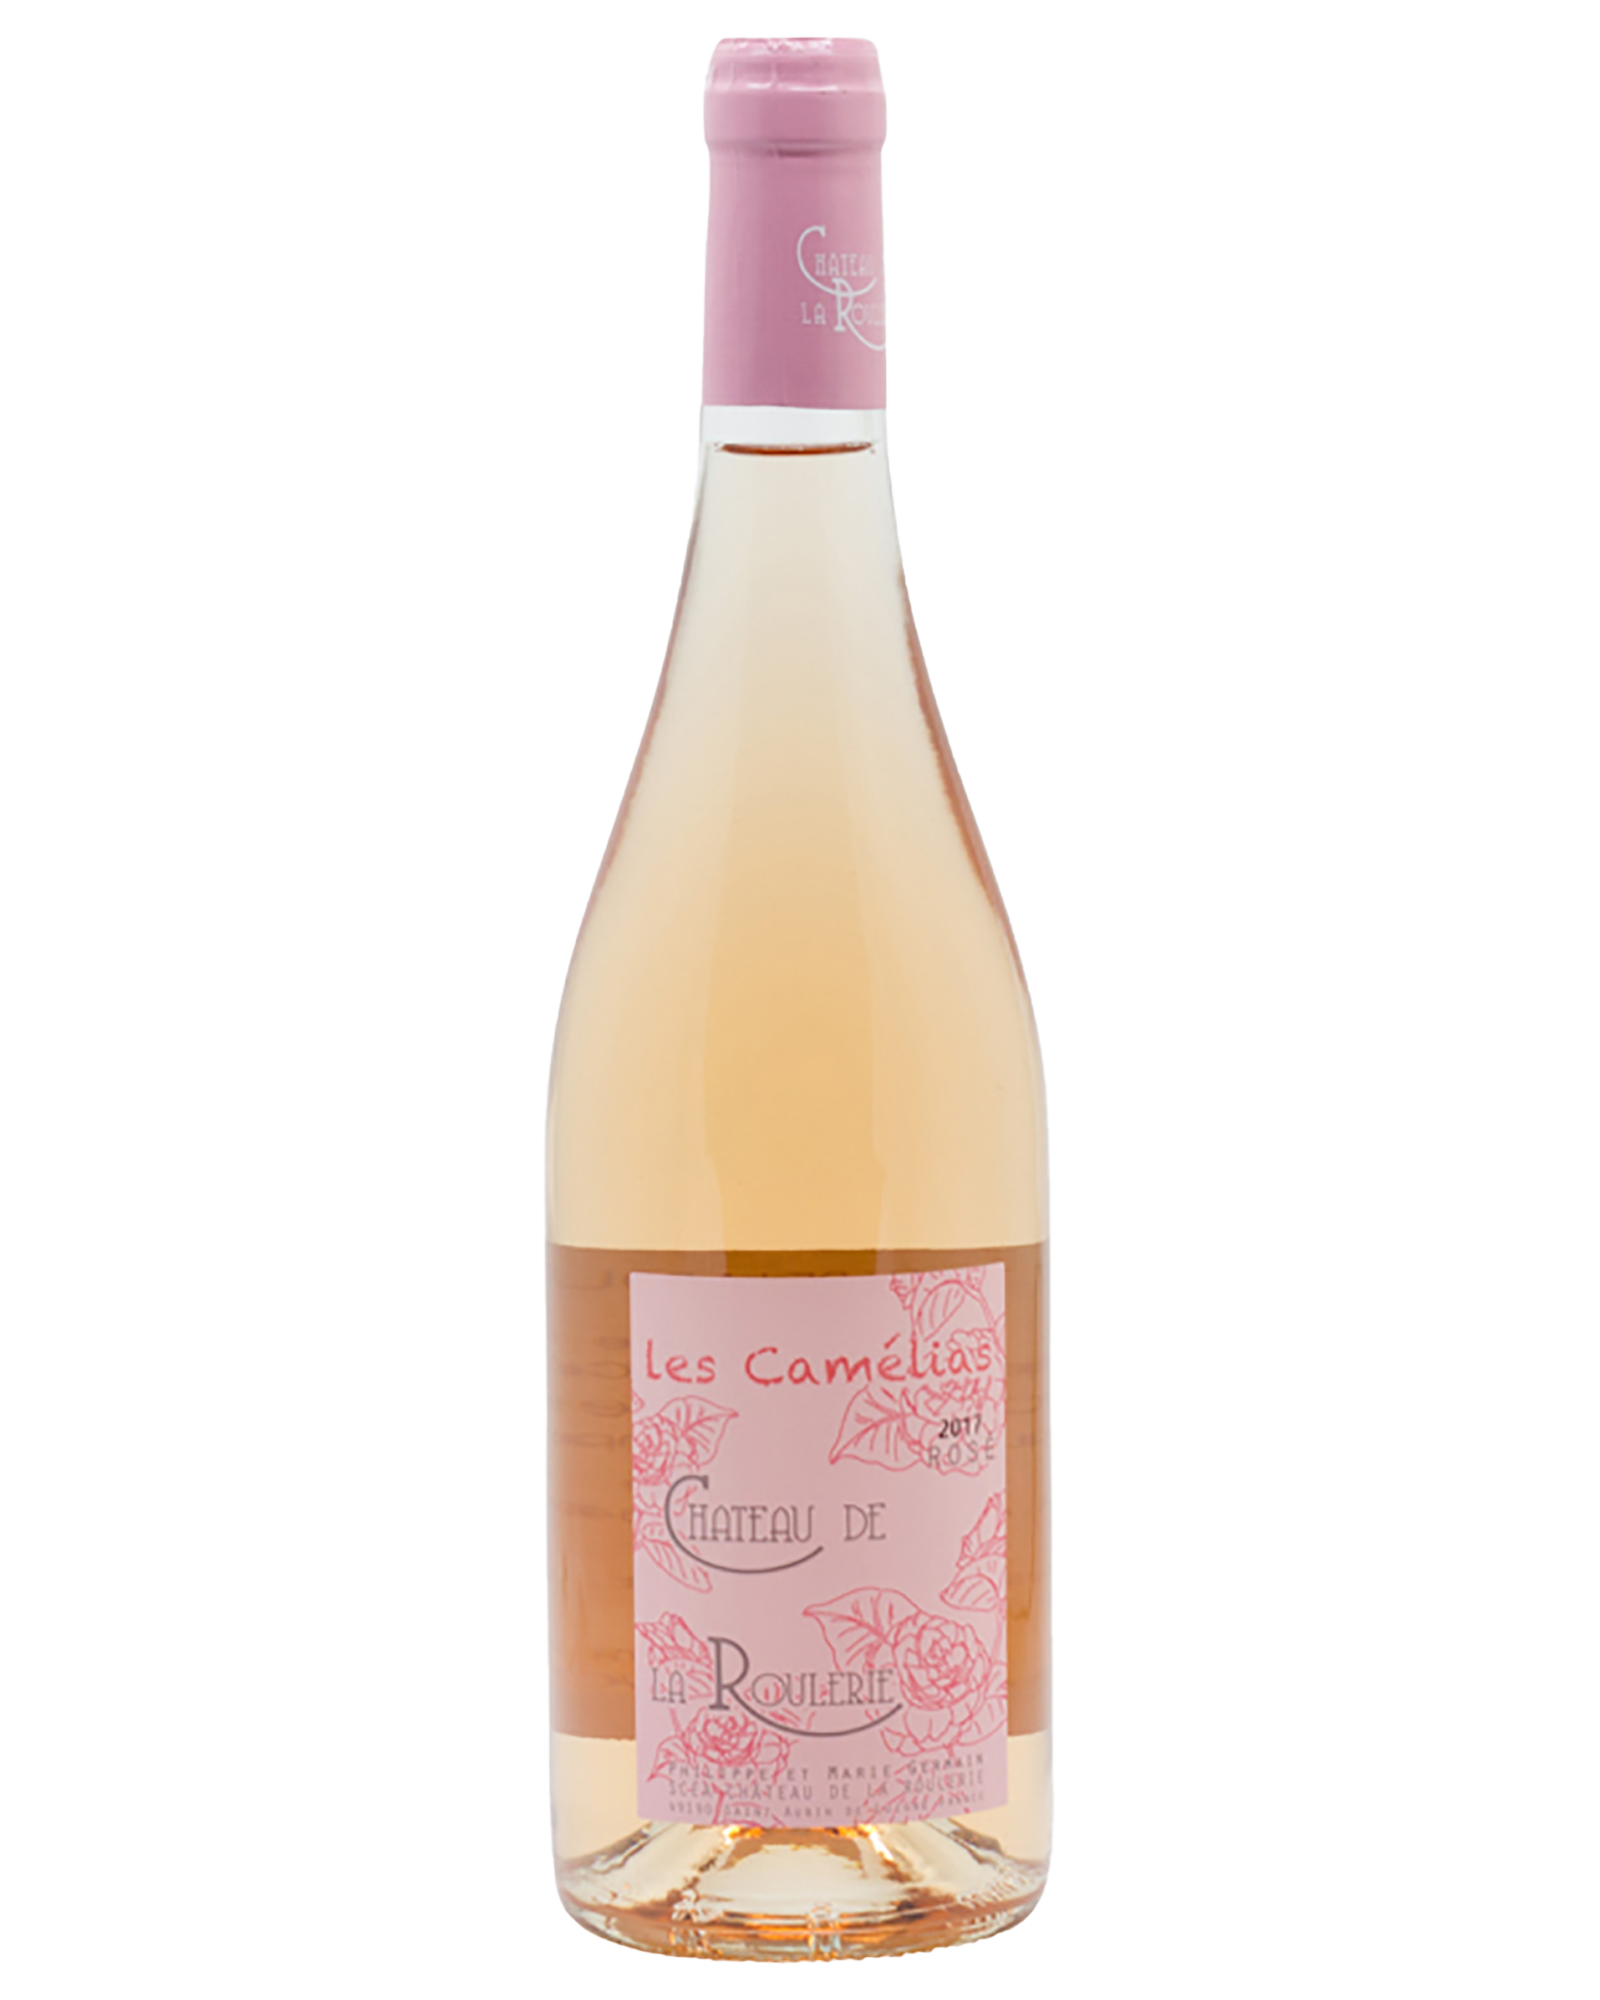 Chateau de la Rouler Les Camelias Rosé 2017